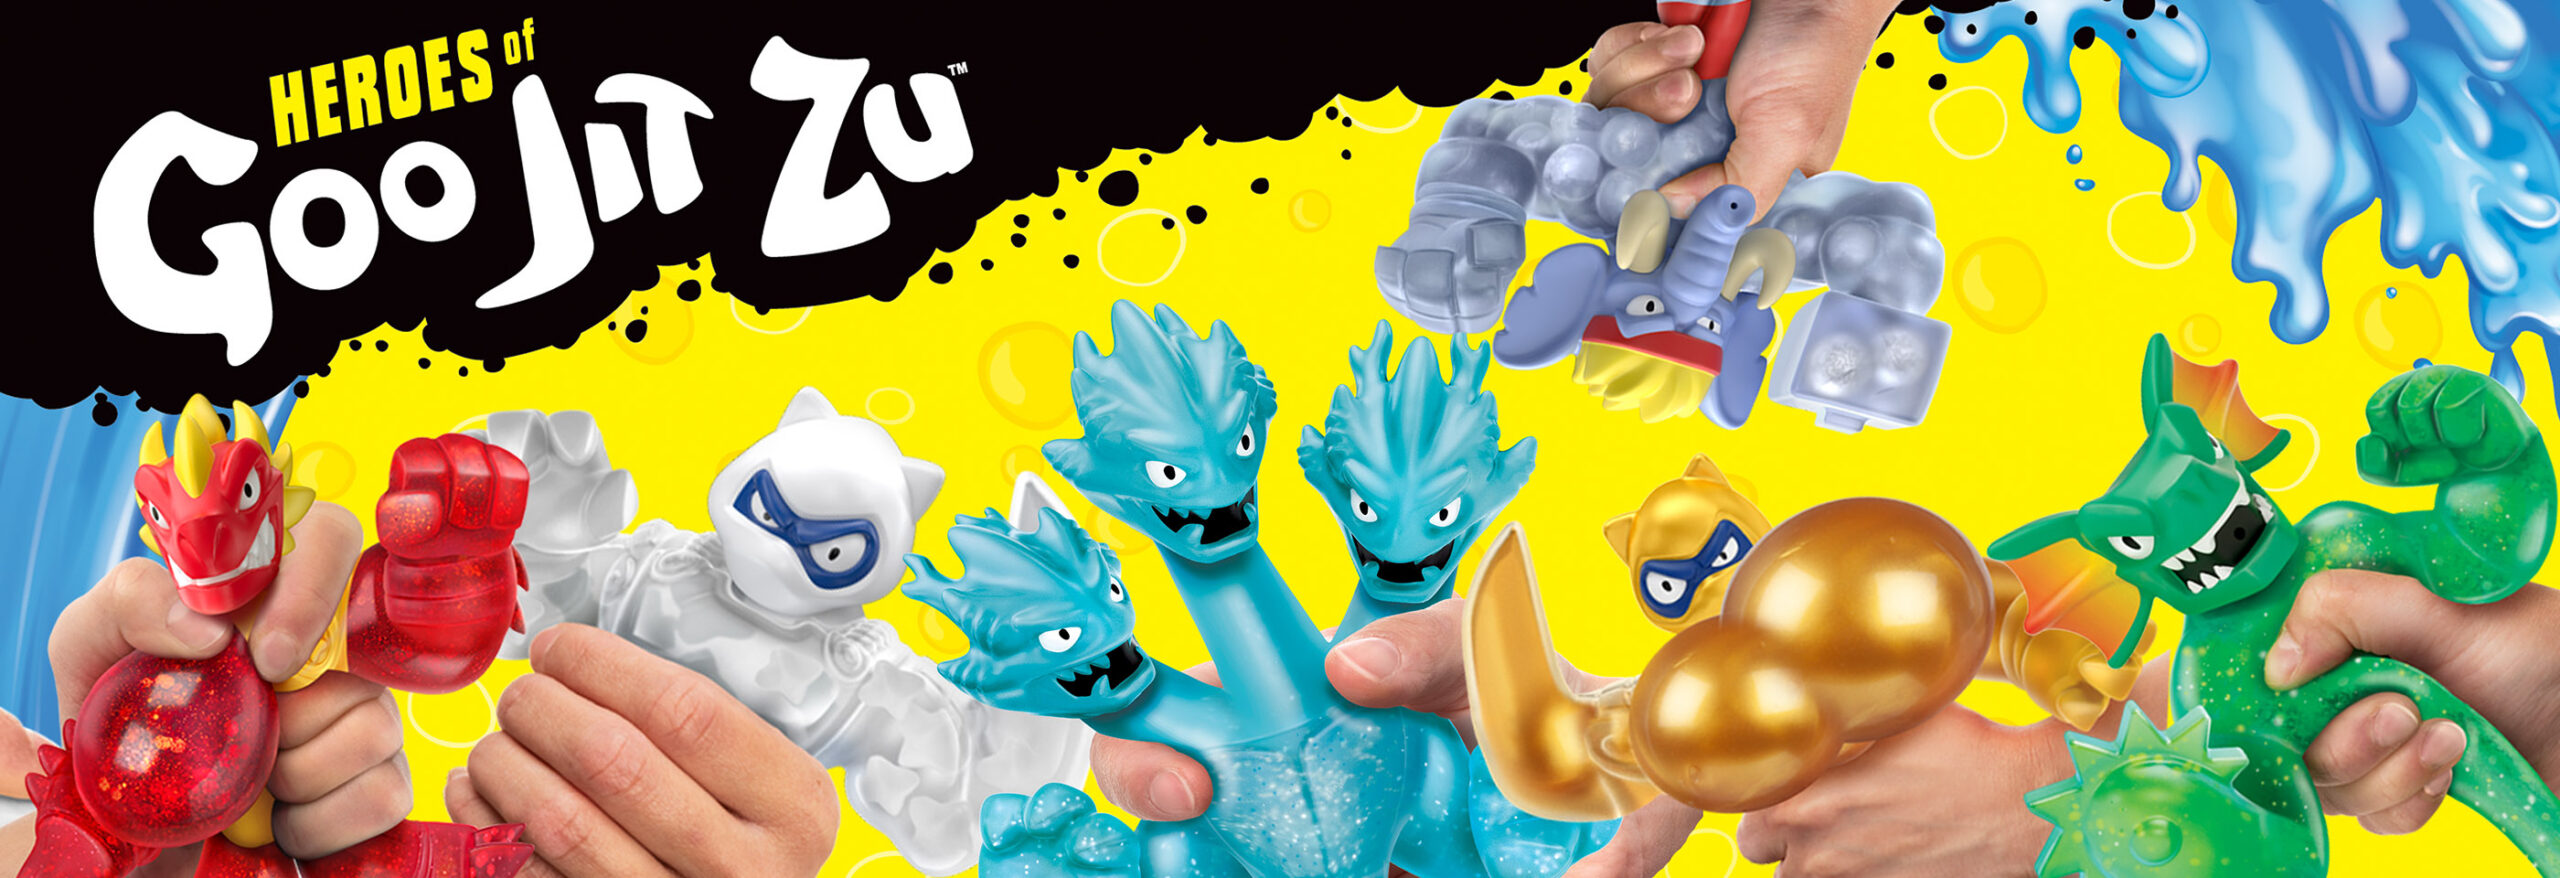 Explore Heroes of Goo Jit Zu Toys, Videos & More